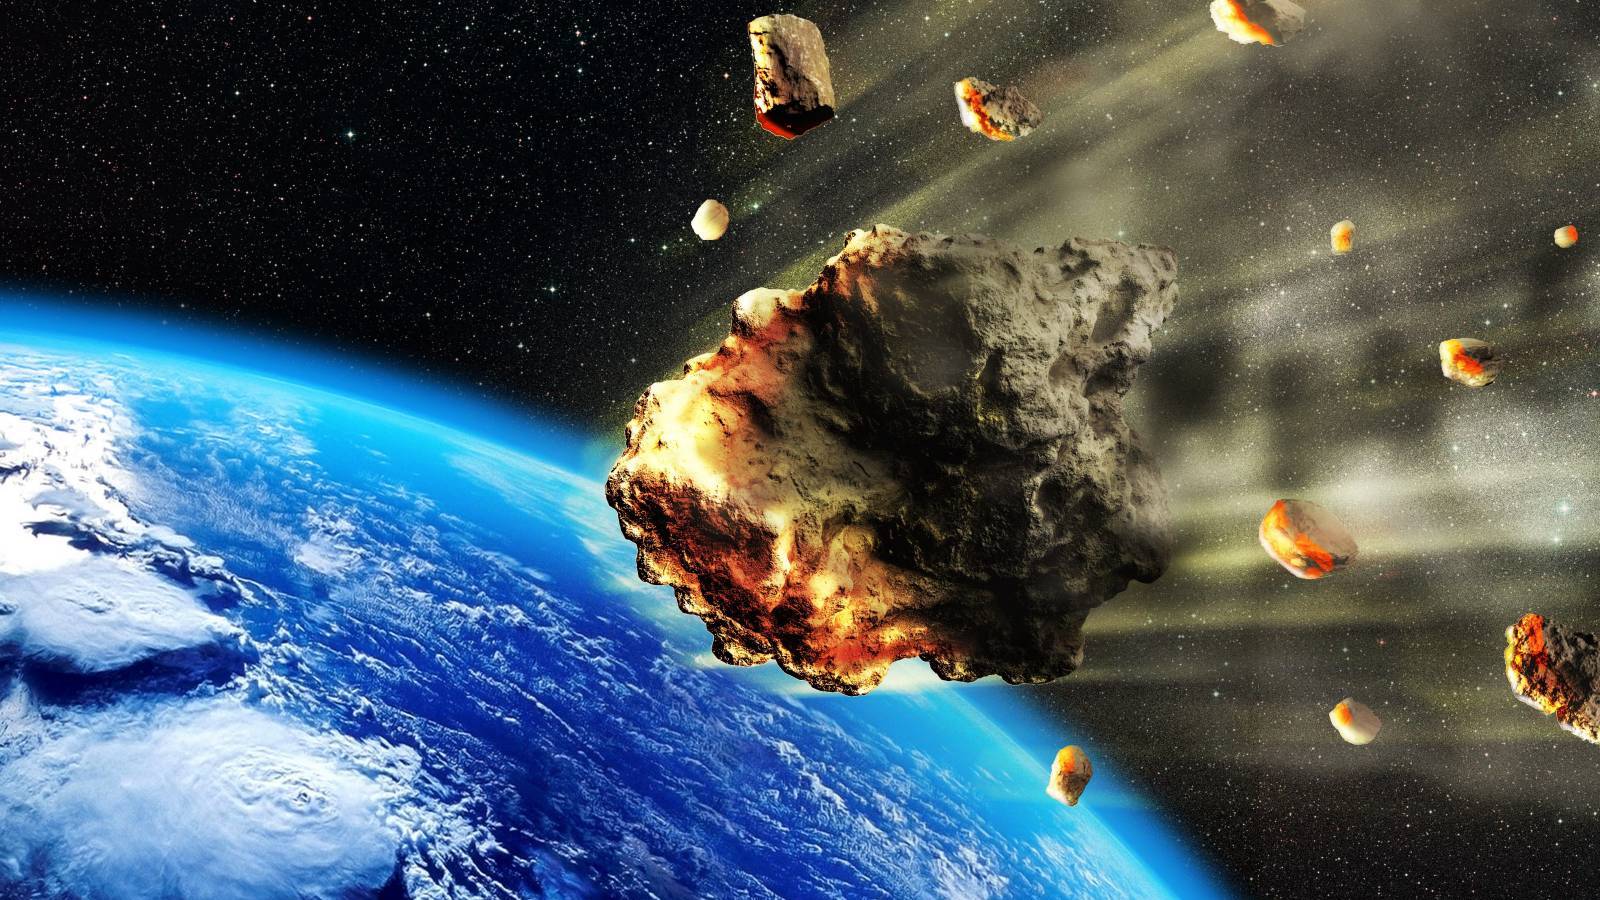 NASA VARNAR Asteroider på väg mot jorden nu